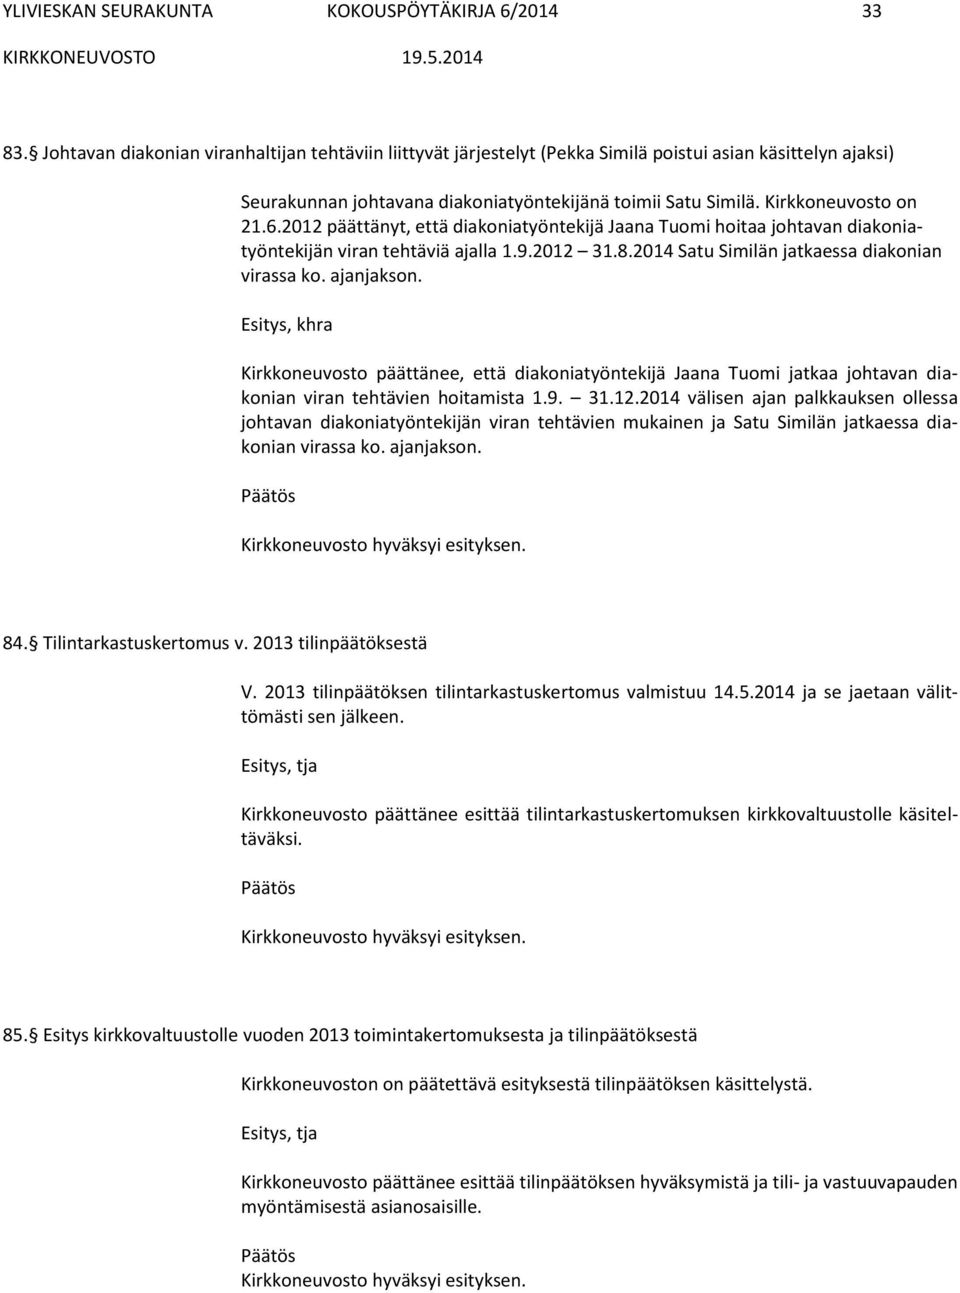 2012 päättänyt, että diakoniatyöntekijä Jaana Tuomi hoitaa johtavan diakoniatyöntekijän viran tehtäviä ajalla 1.9.2012 31.8.2014 Satu Similän jatkaessa diakonian virassa ko. ajanjakson.